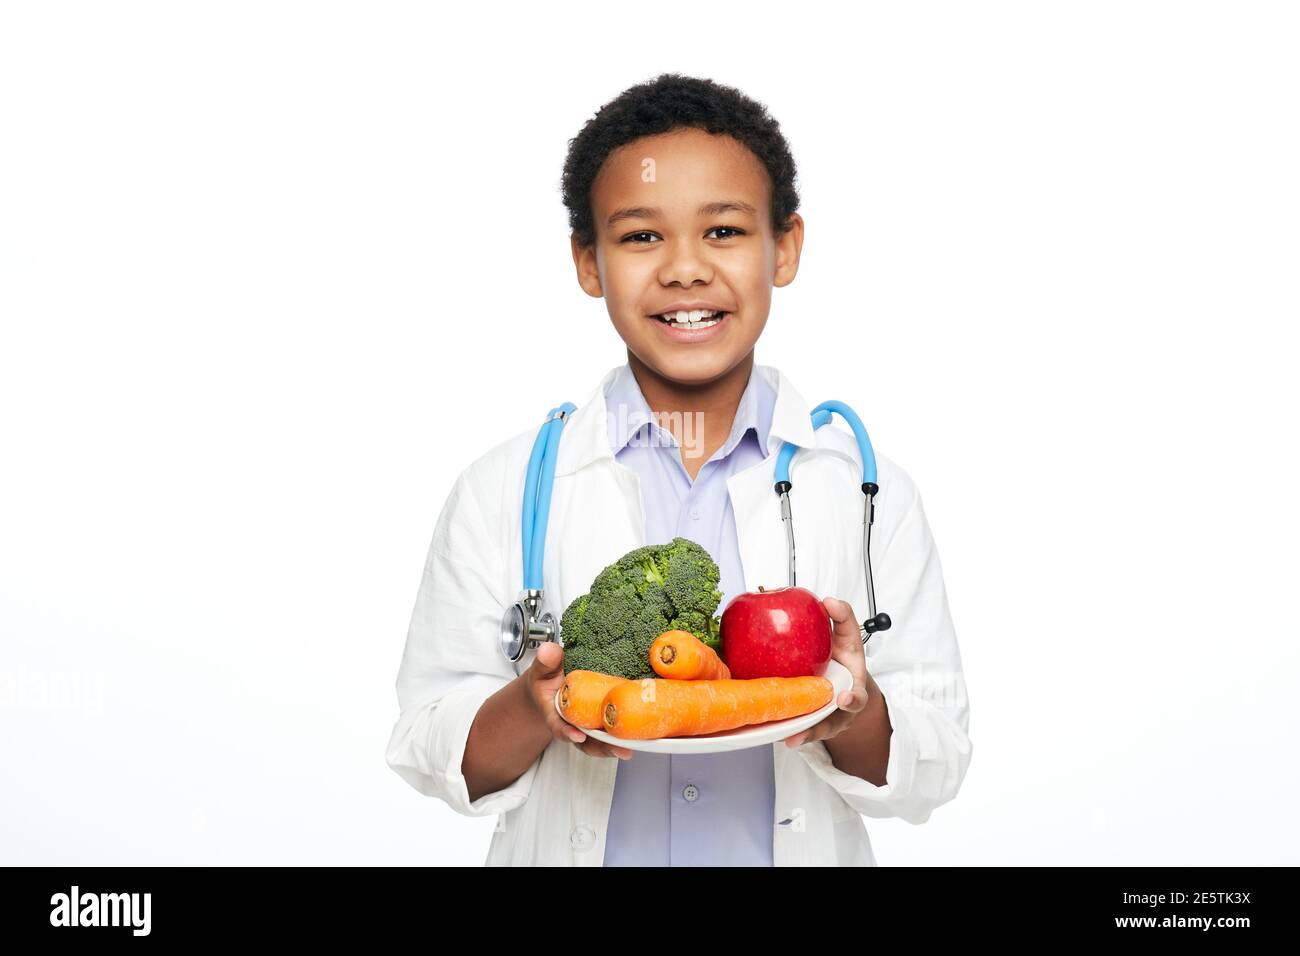 Junge afroamerikanische Kind, als Arzt gekleidet, empfiehlt Gemüse und Obst für die richtige Ernährung und Vorteile für Ihre Gesundheit Stockfoto